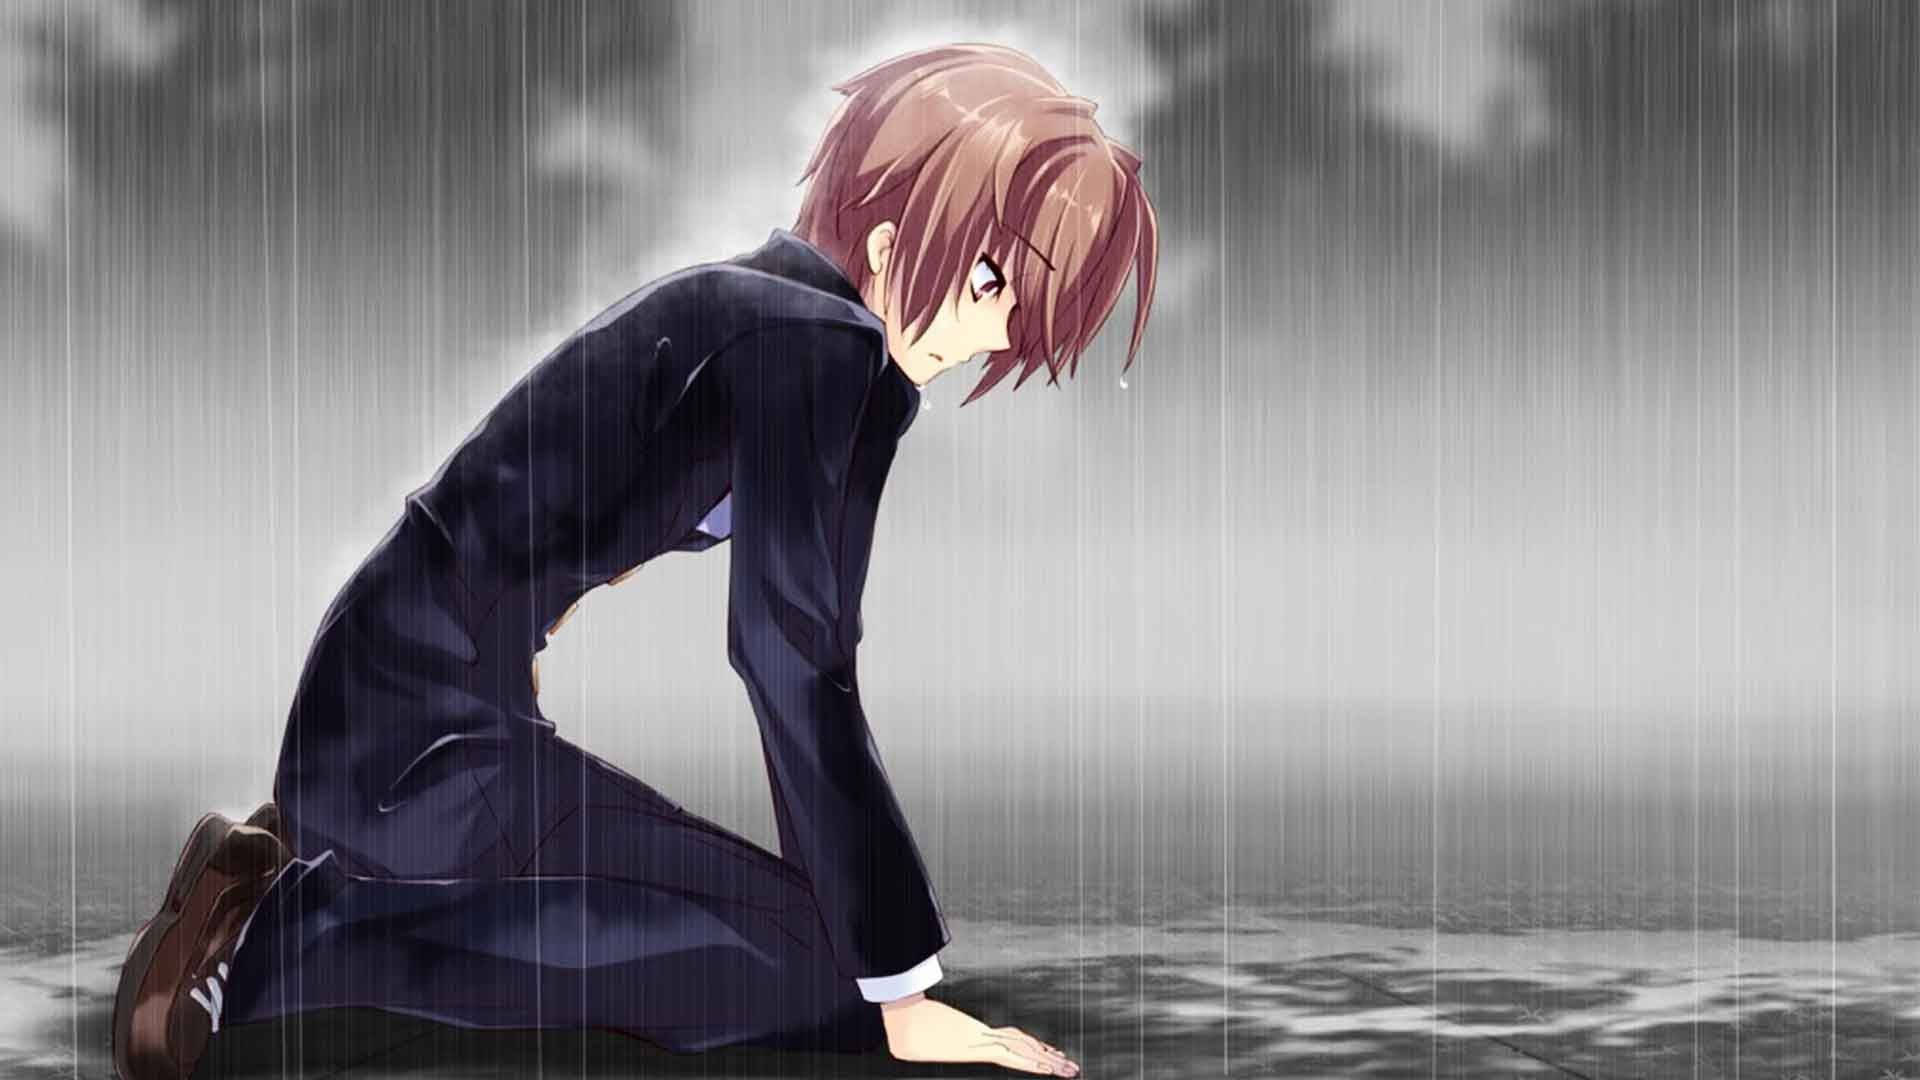 In The Rain Anime Boy Sad Aesthetic